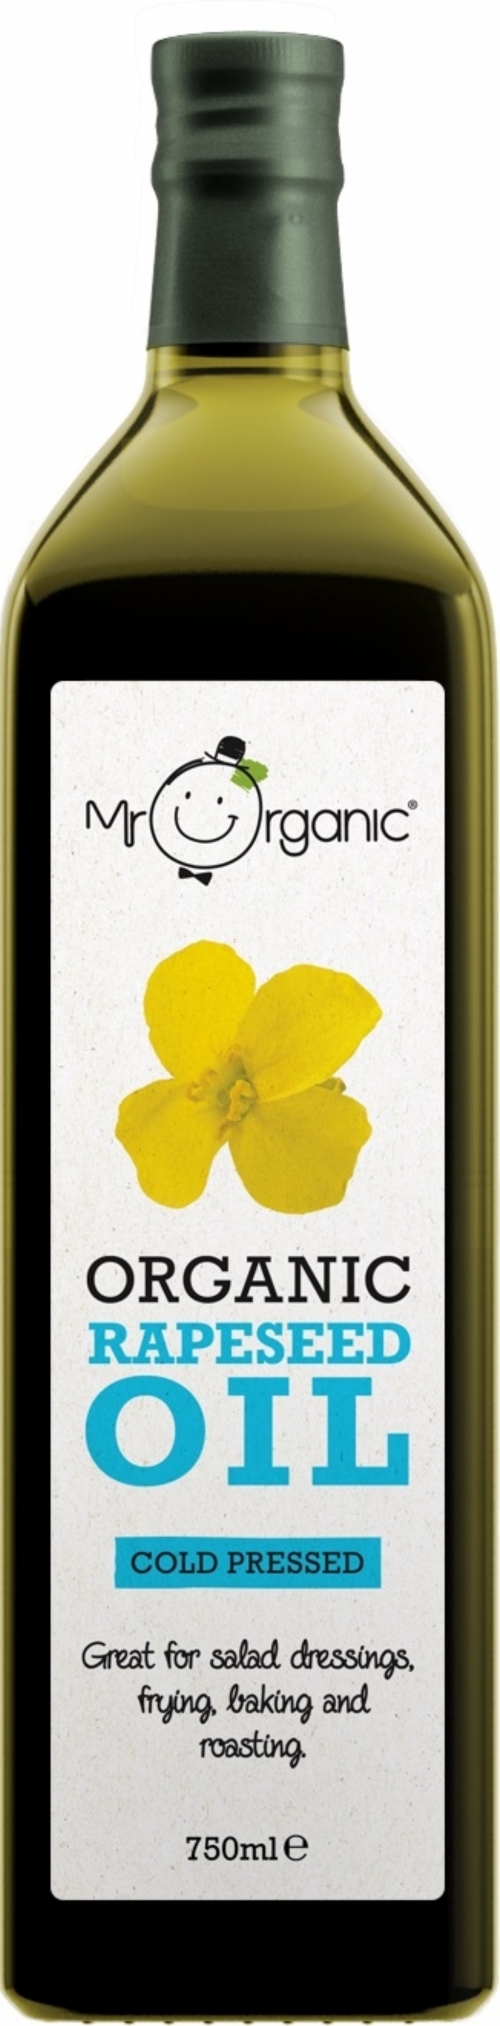 MR ORGANIC Organic Rapeseed Oil 750ml